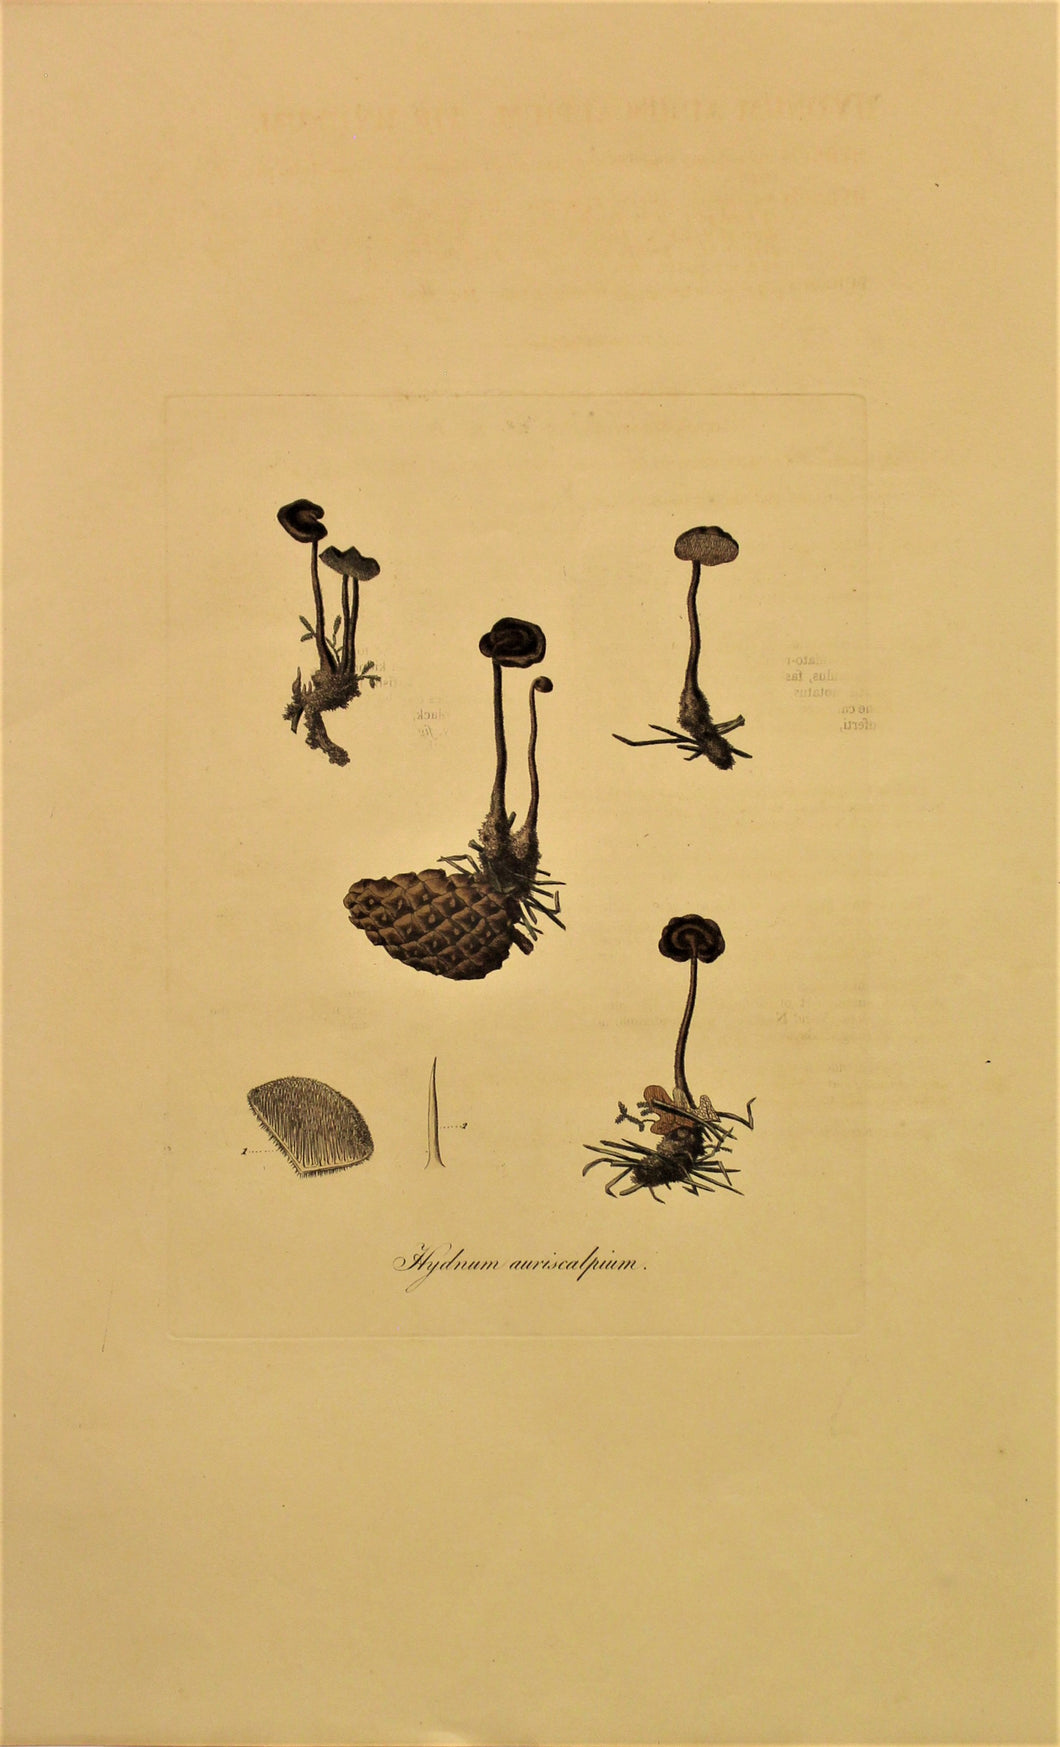 Botanical, Curtis William, Fungus, Hydrum Auriscalpium, Flora Londinensis, c1817